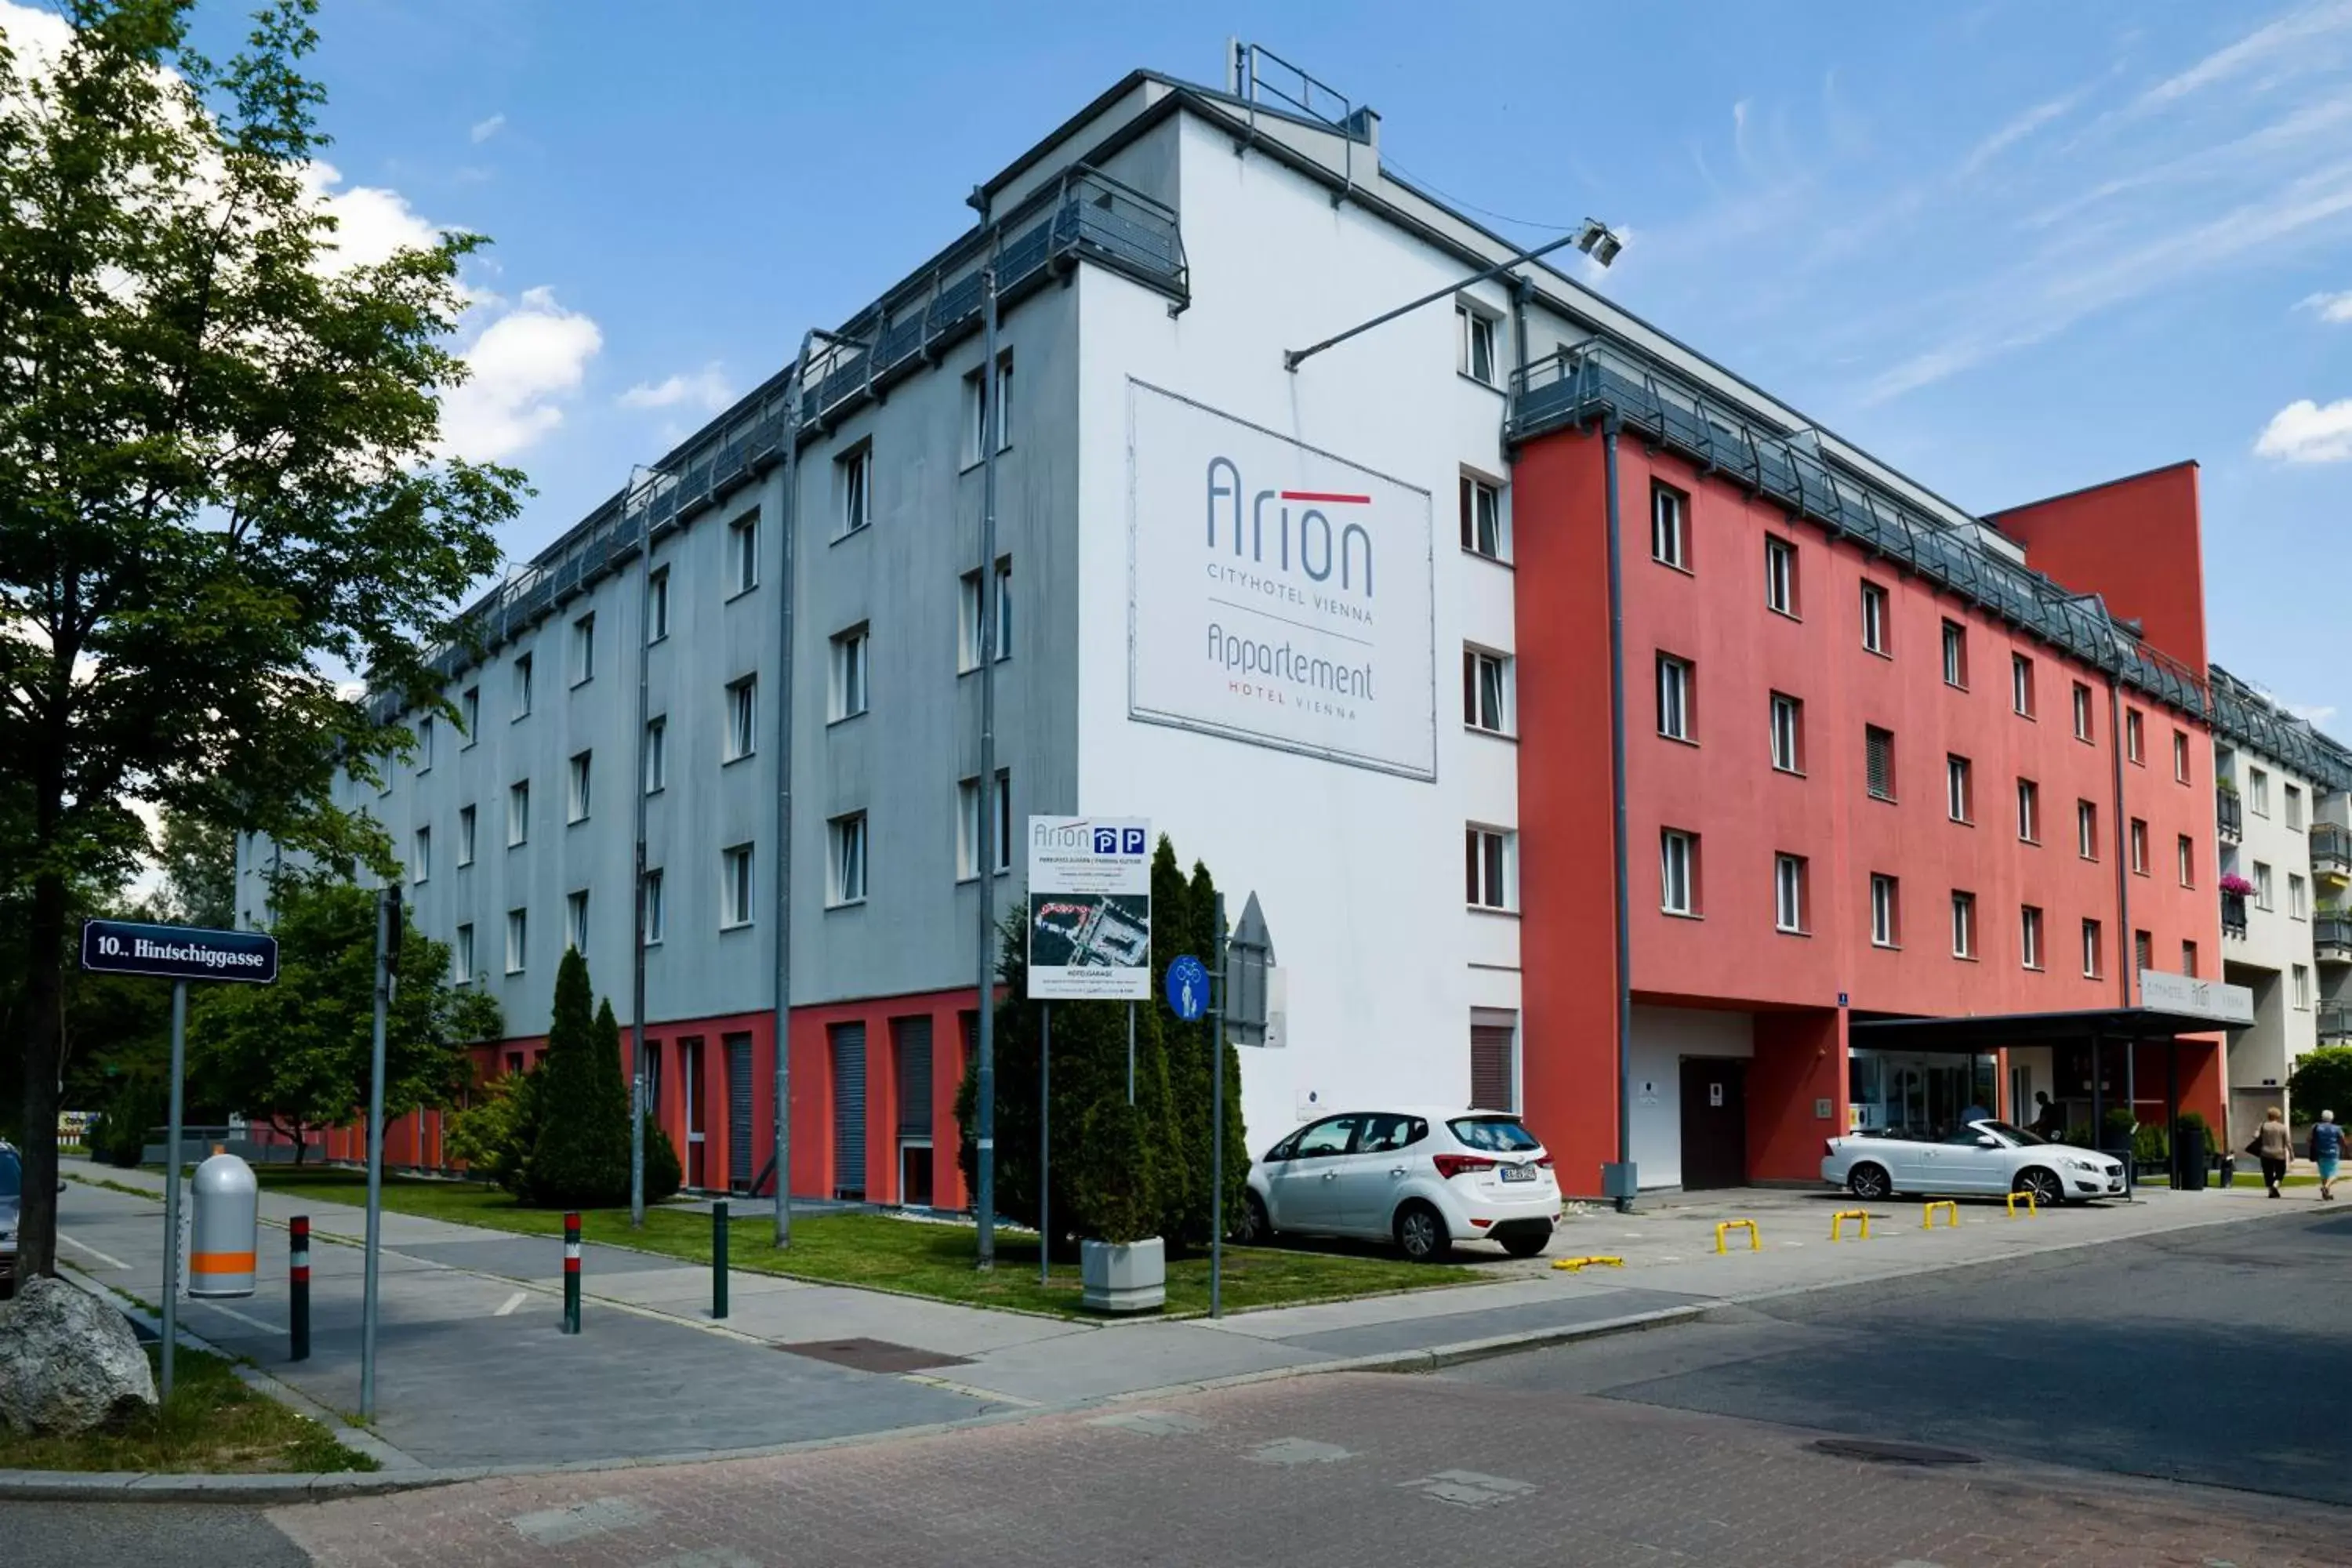 Property Building in Arion Cityhotel Vienna und Appartements